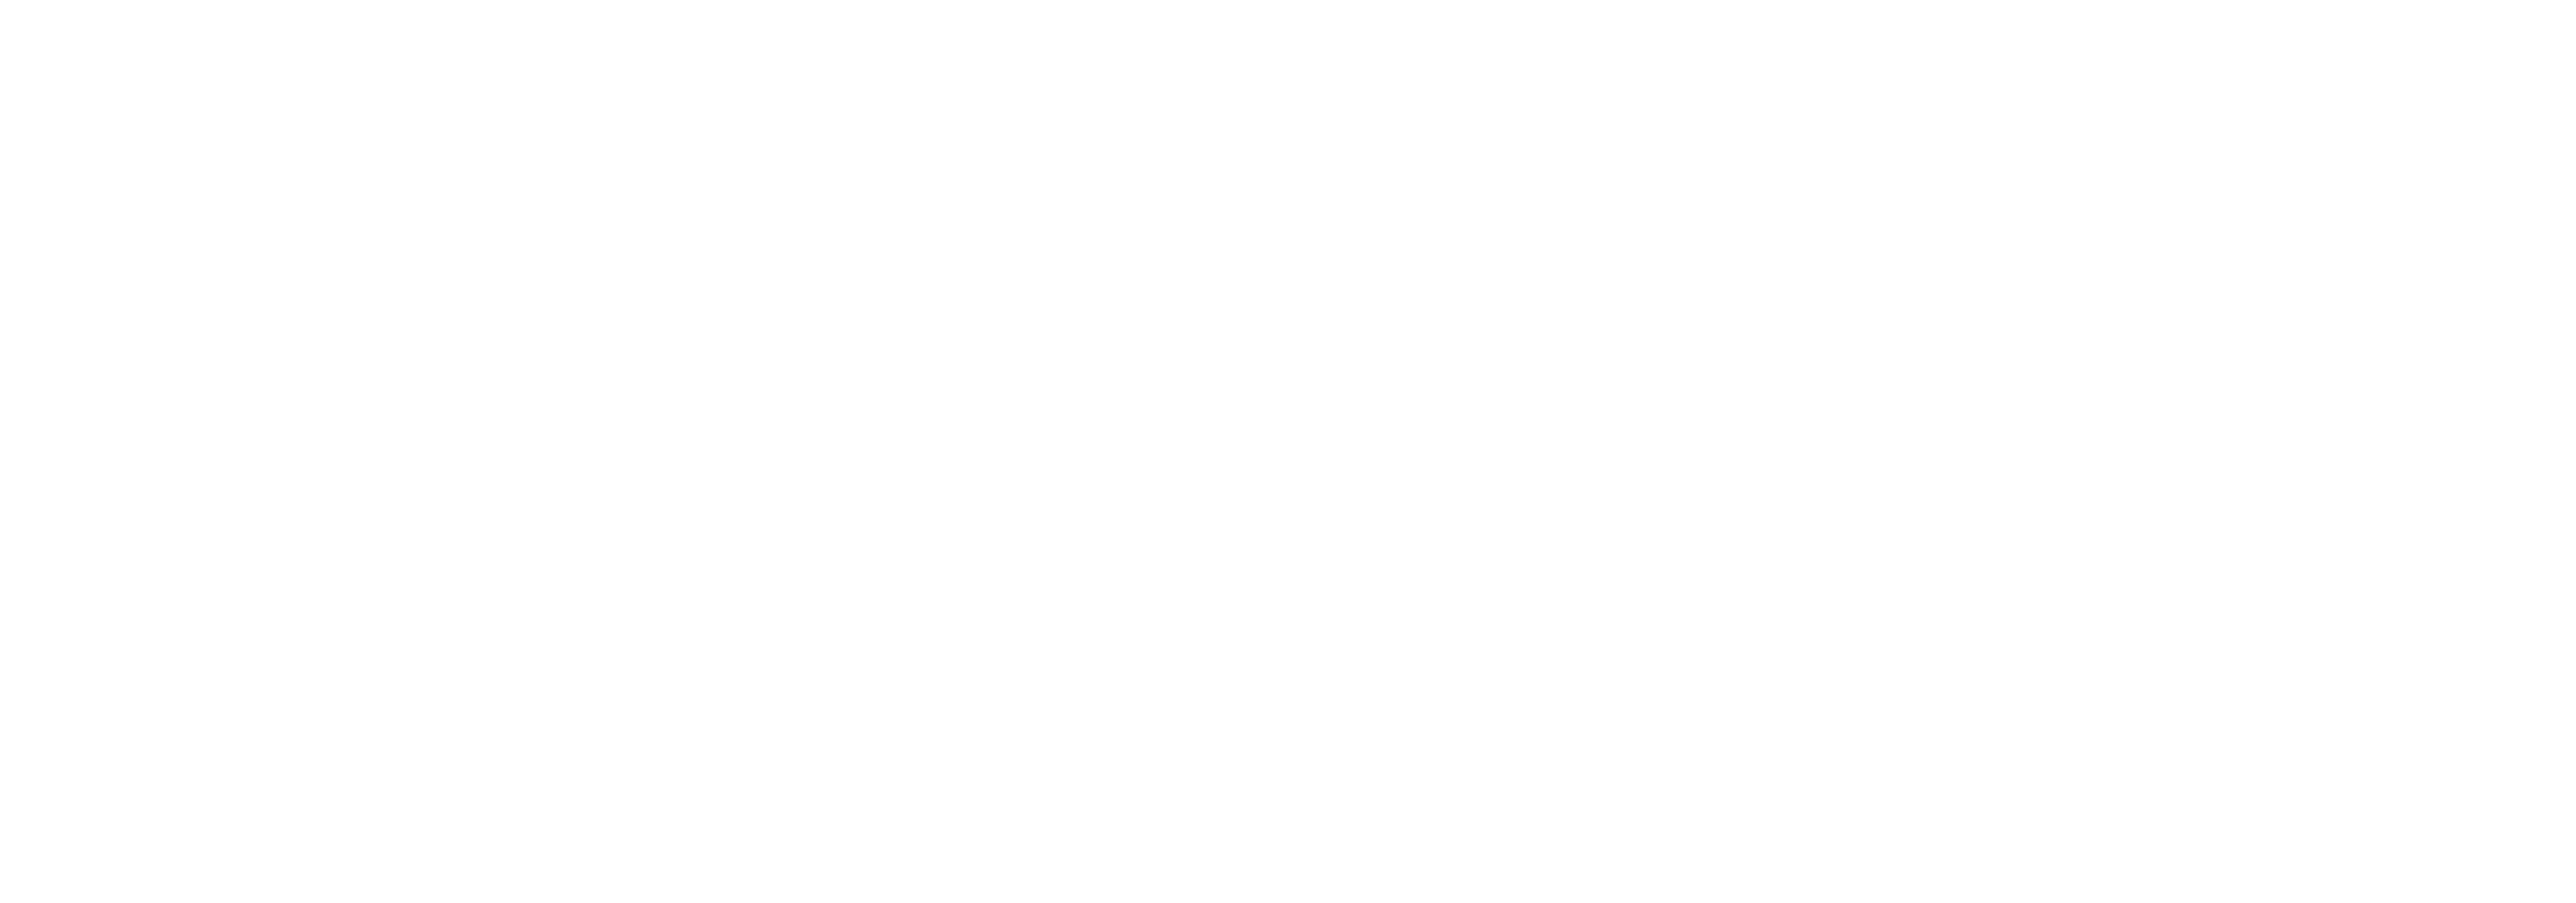 Target_logo_white-01